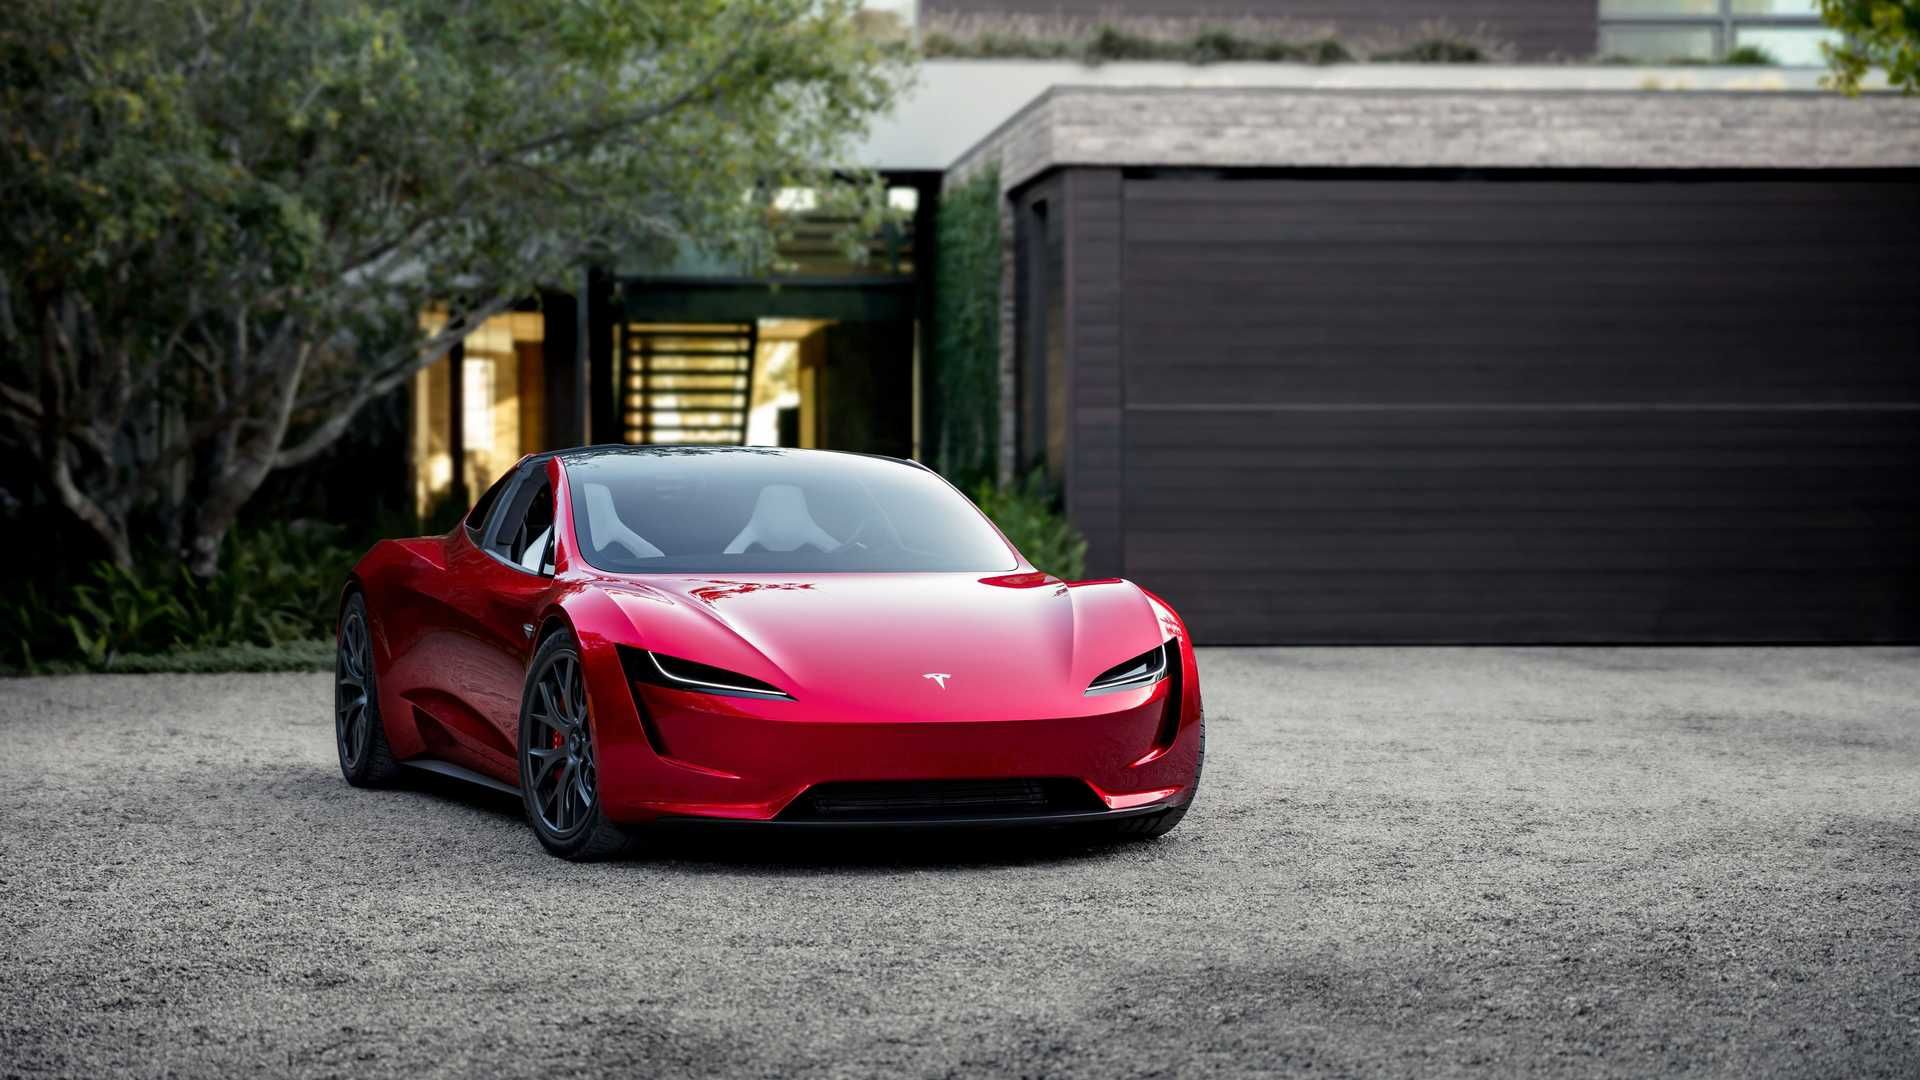 نمای جلو خودروی الکتریکی تسلا رودستر / Tesla Roadster قرمز رنگ در کنار خانه و  درخت